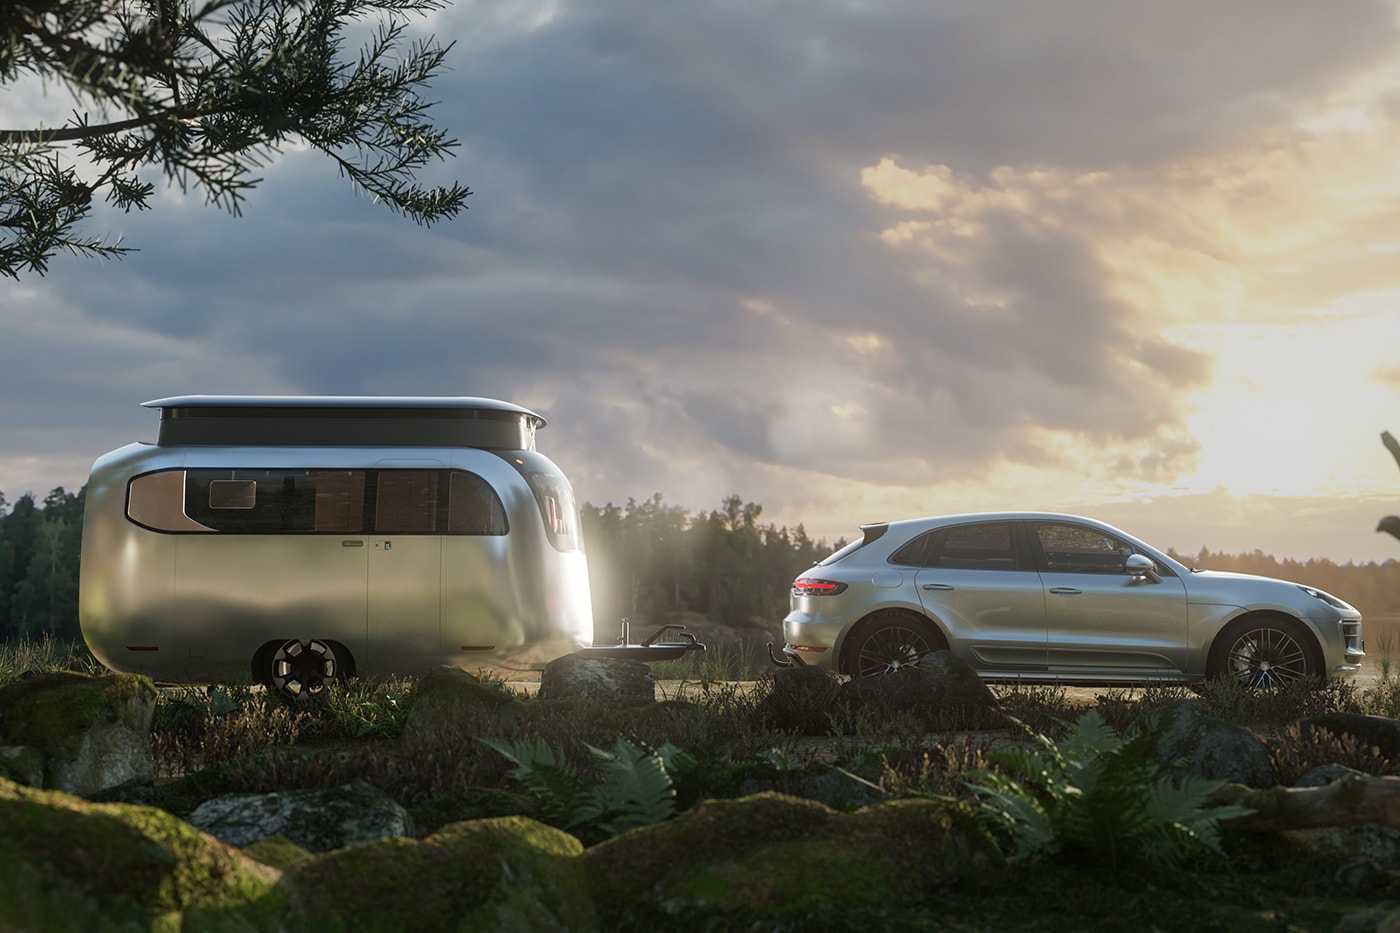 エアストリーム x スタジオ・F.A.ポルシェ によるコラボトラベルトレーラーが公開 Airstream Studio F. A. Porsche Concept Travel Trailer Info